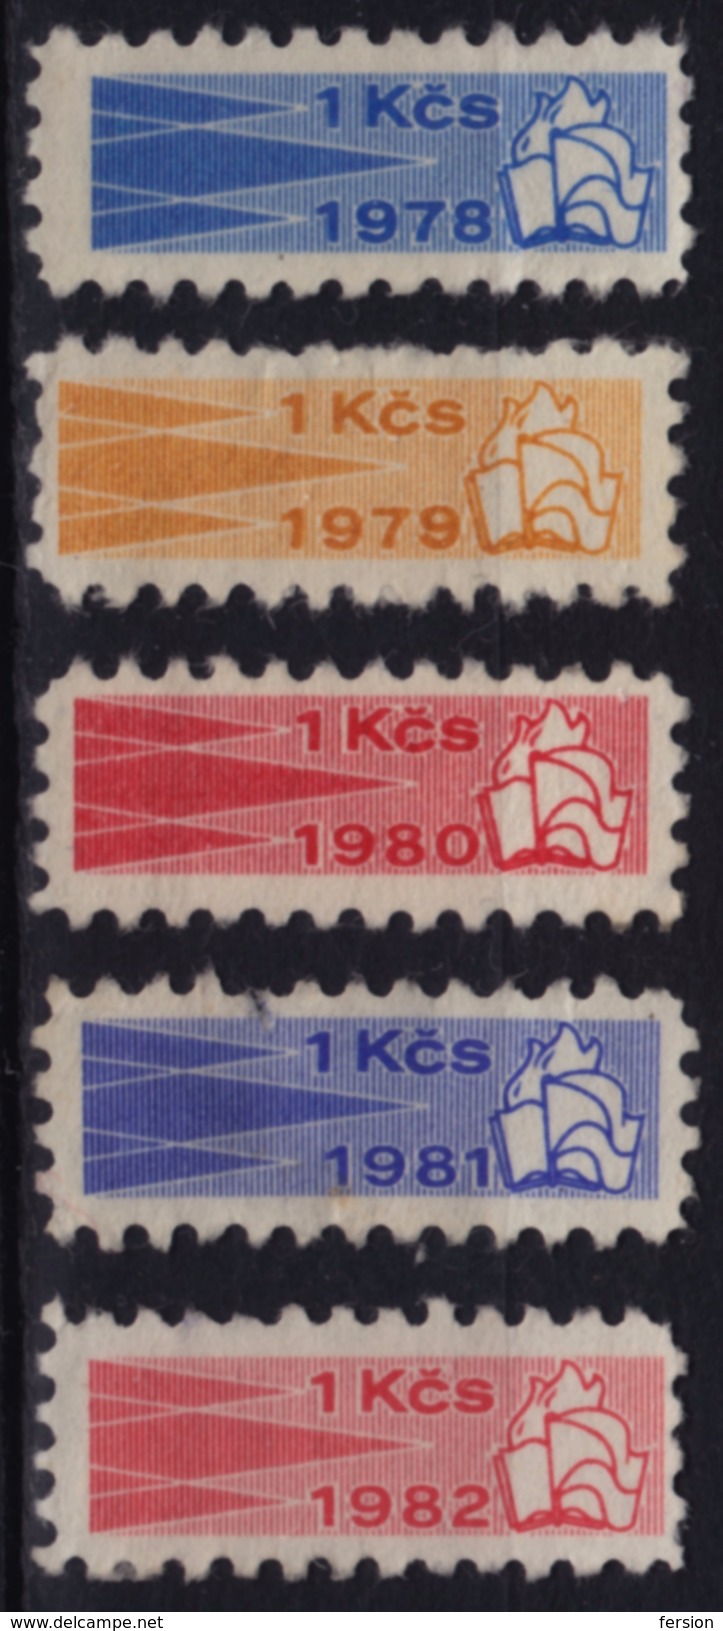 Kontrolní Znamka Controll Member Stamp 1978 1979 1980 1981 1982 Czechoslovakia Label Cinderella Vignette FLAG BOKK FLAME - Official Stamps